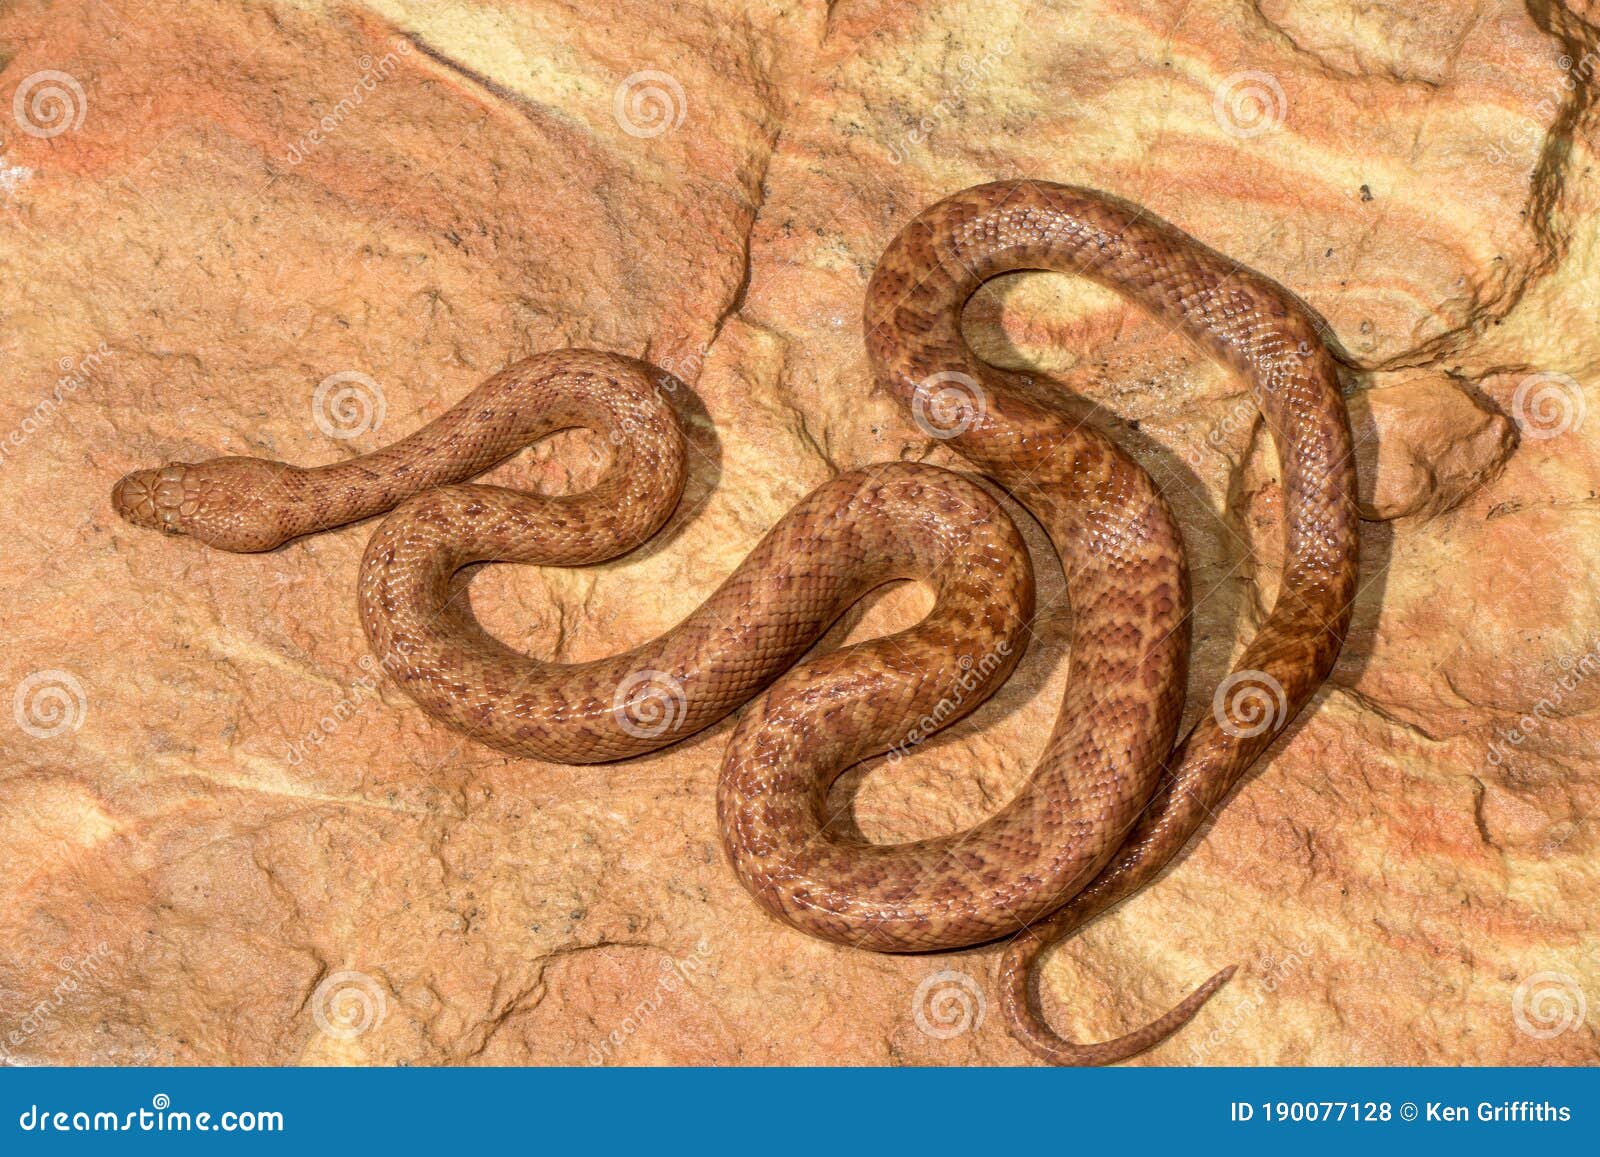 Pygmy python